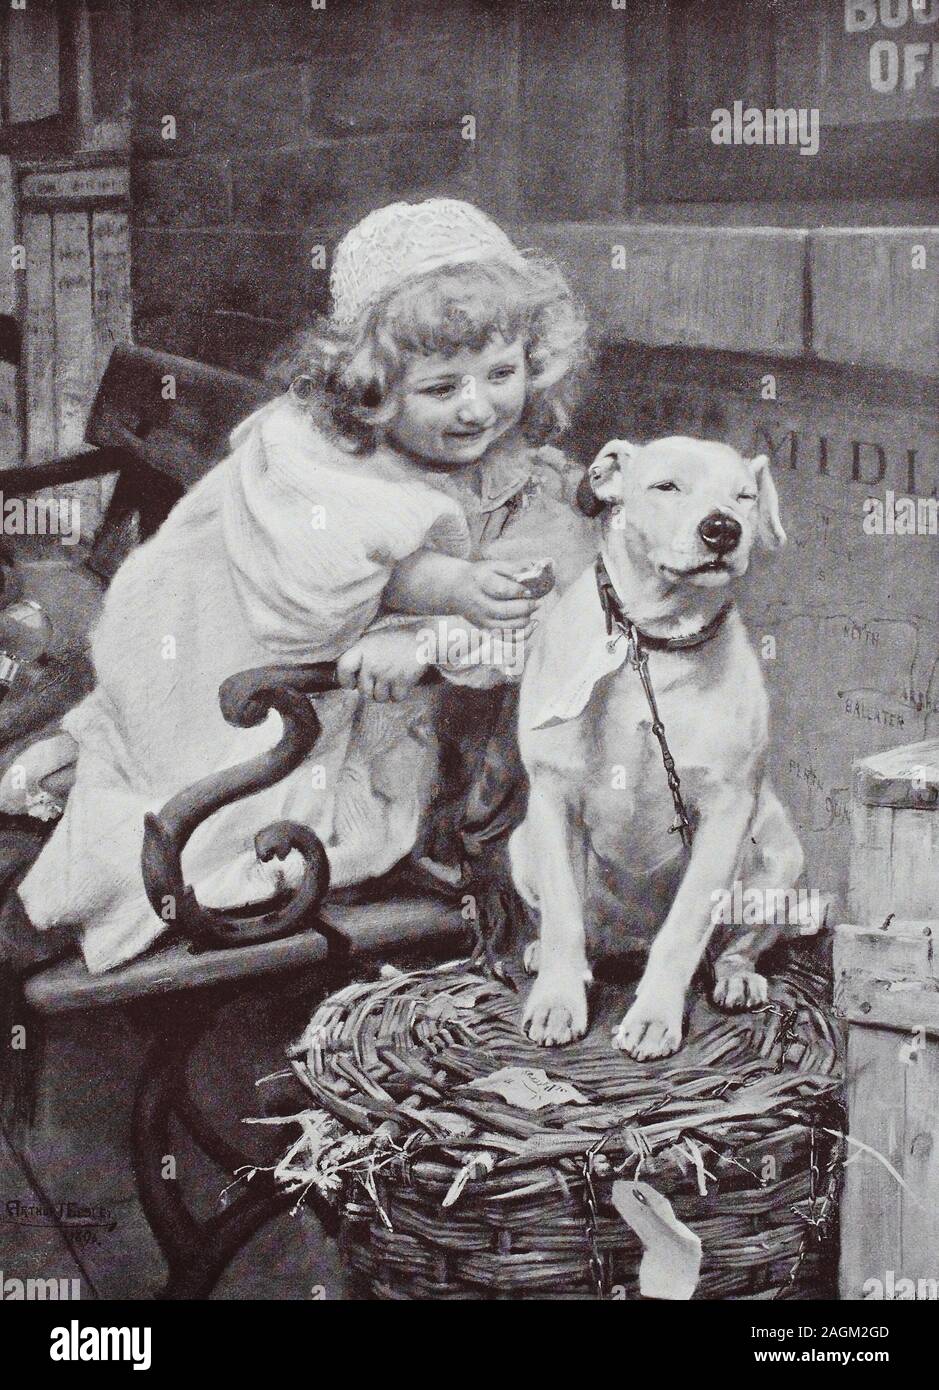 Bambina dà il cane domestico un biscotto, stampa originale a partire dall'anno 1899, kleines Mädchen gibt dem einen Haushund della Keks, Reproduktion einer Originalvorlage aus dem 19. Jahrhundert, digital verbessert Foto Stock